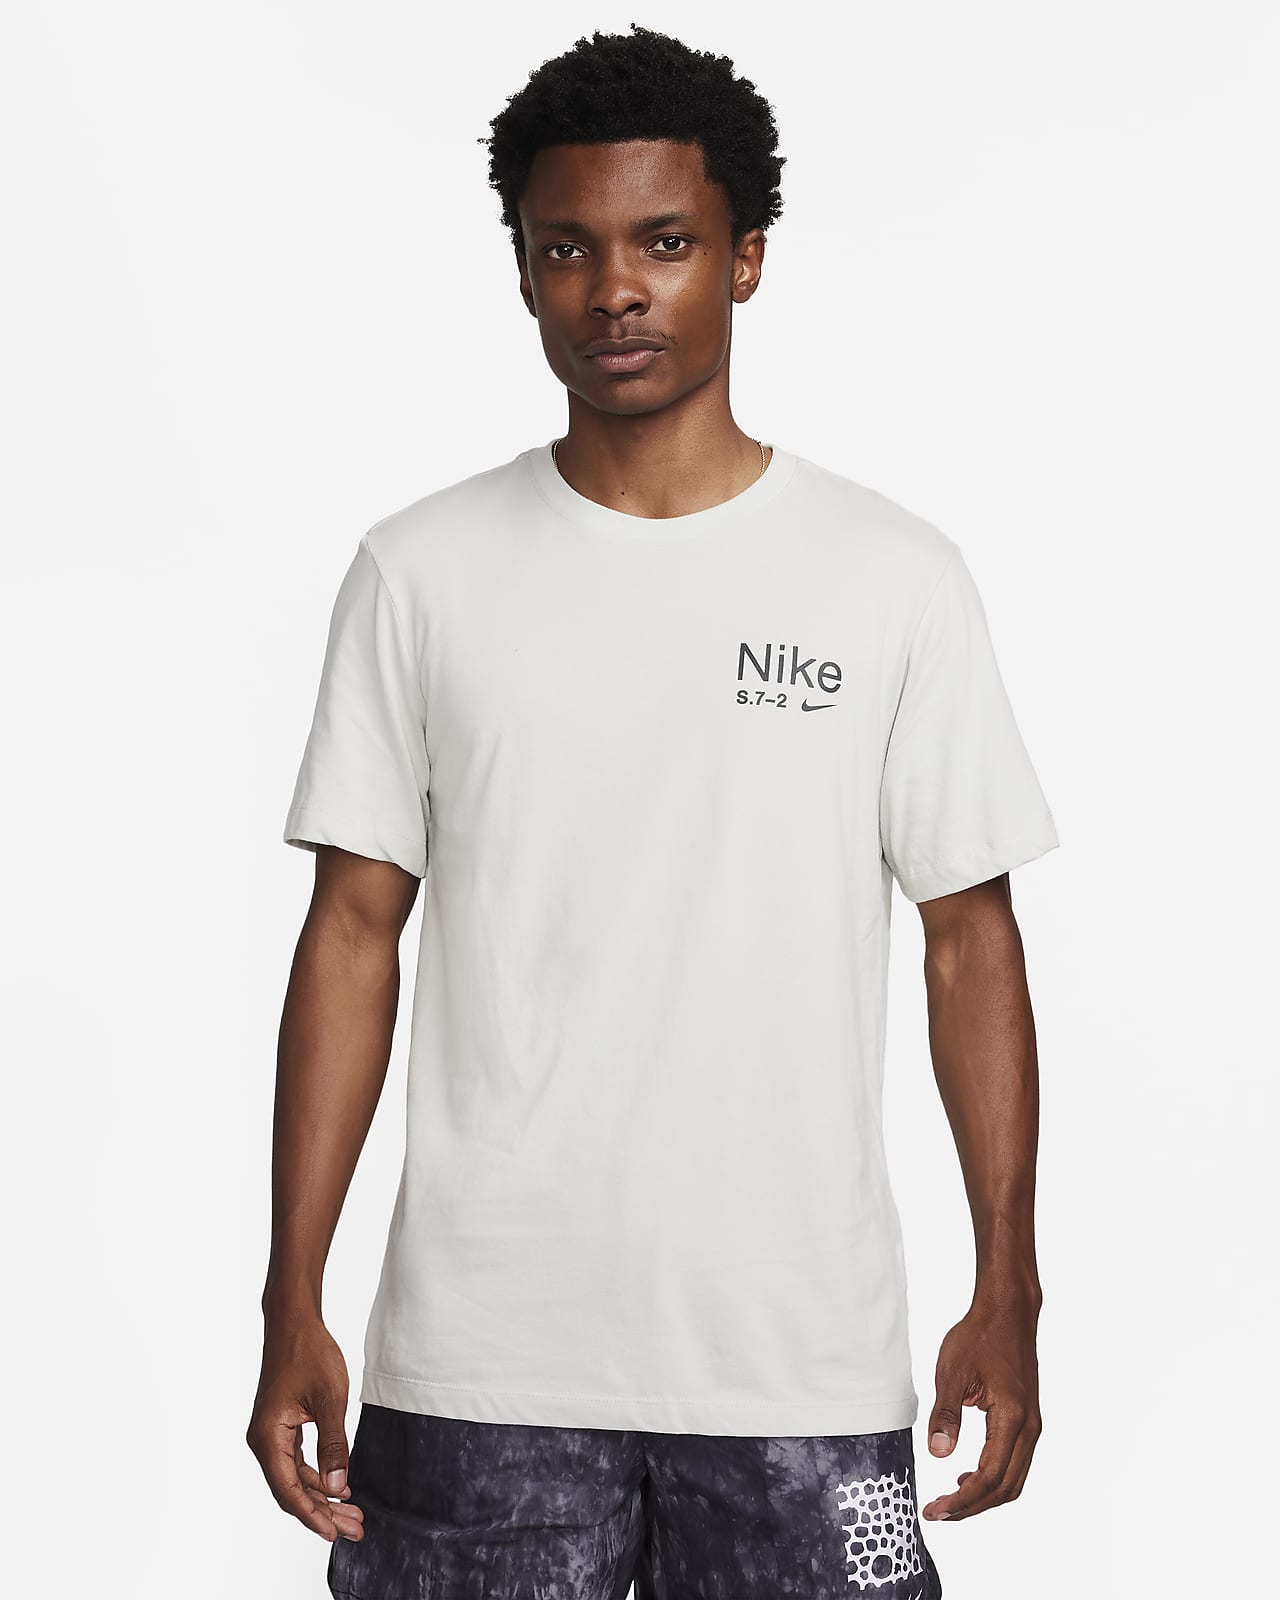 Nike Tee - White S